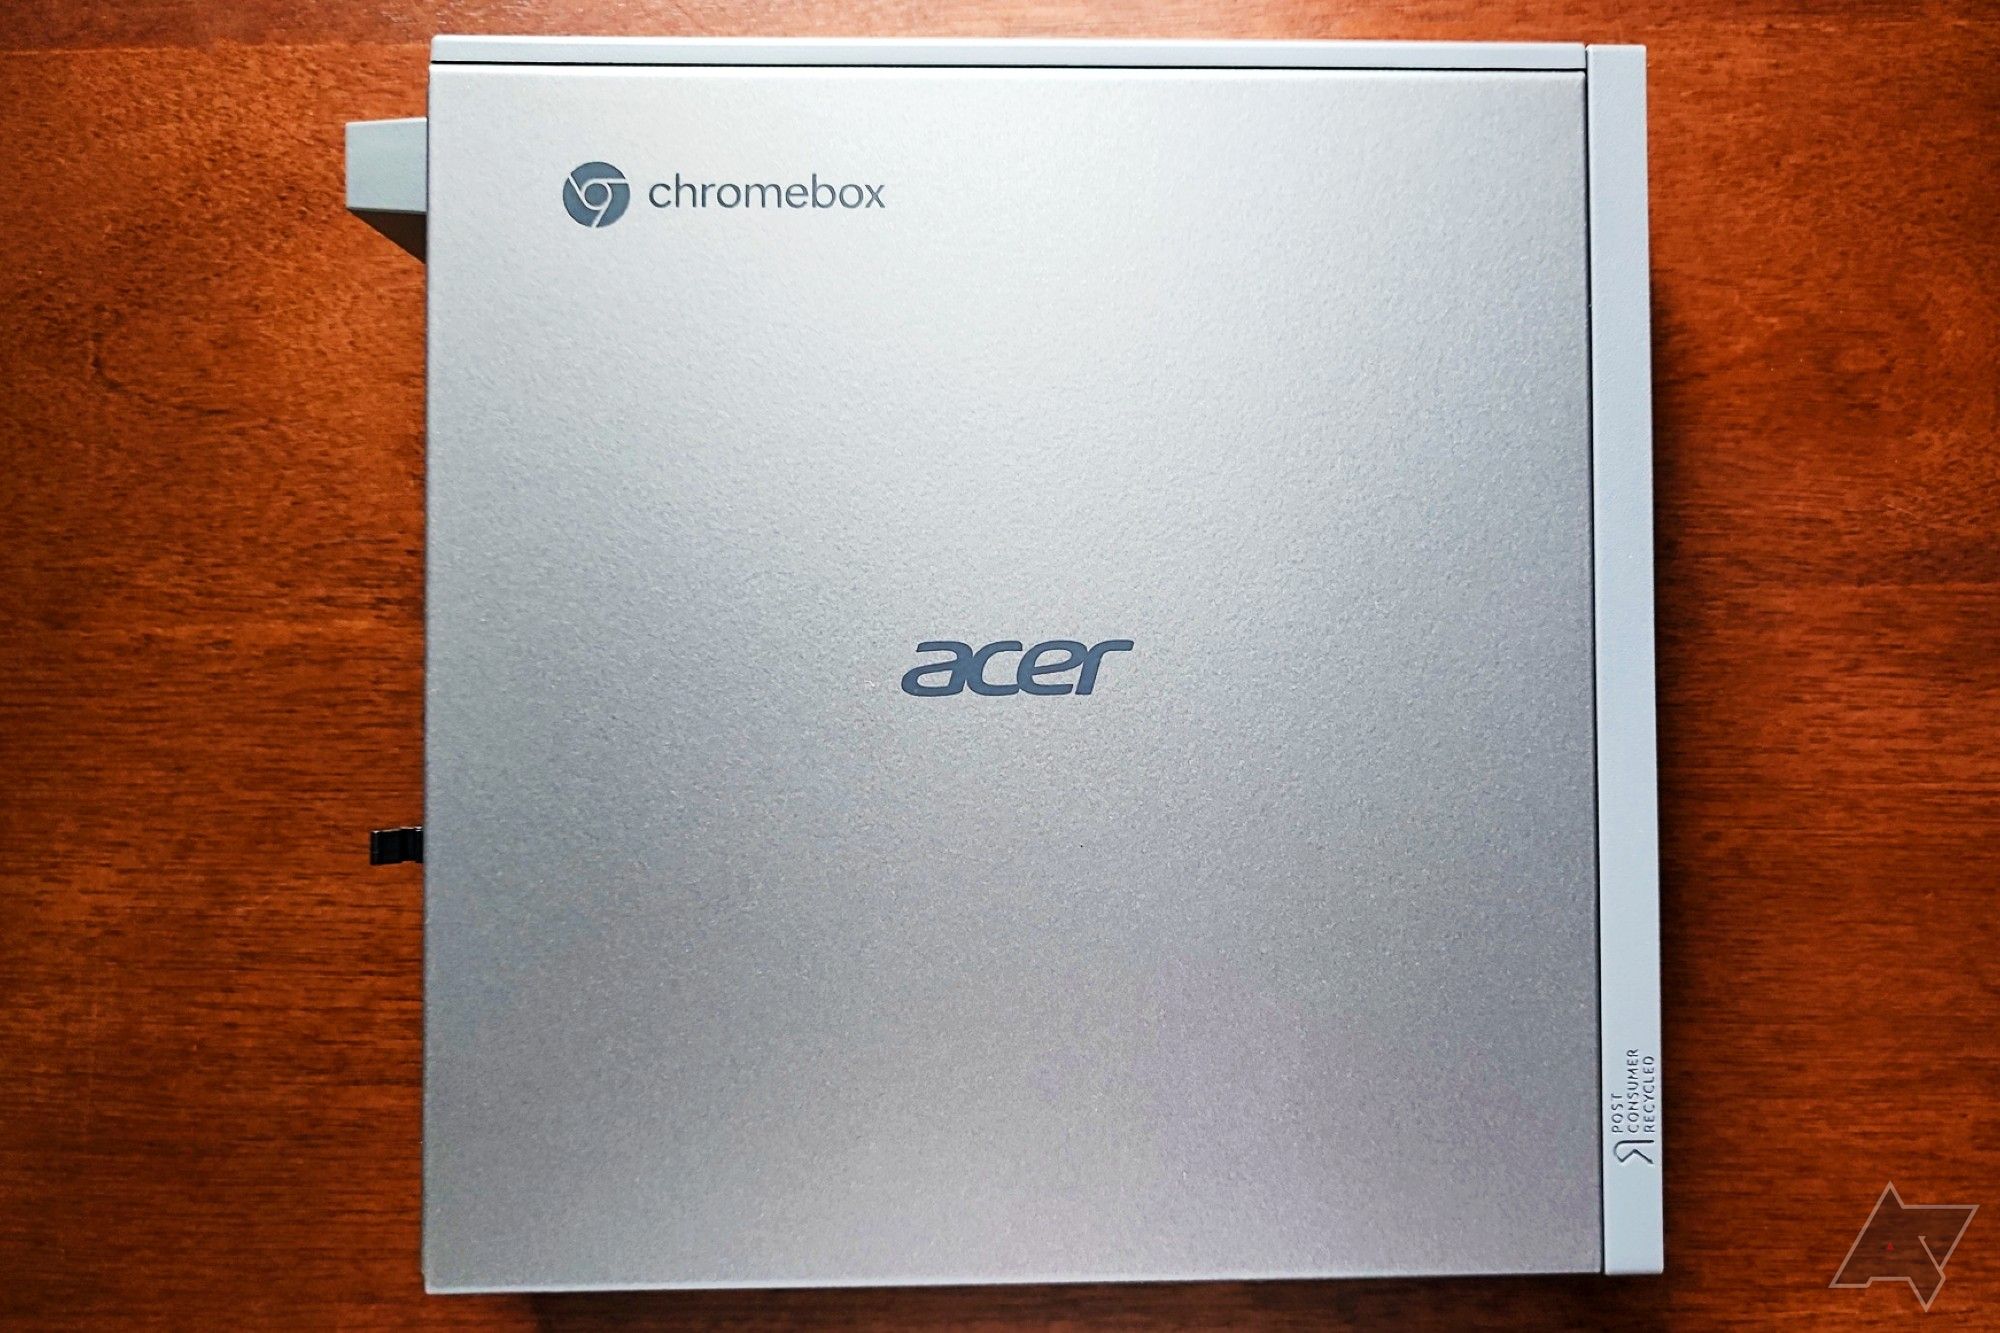 Vista plana de cima para baixo do Acer Chromebox CXI5 mostrando o logotipo